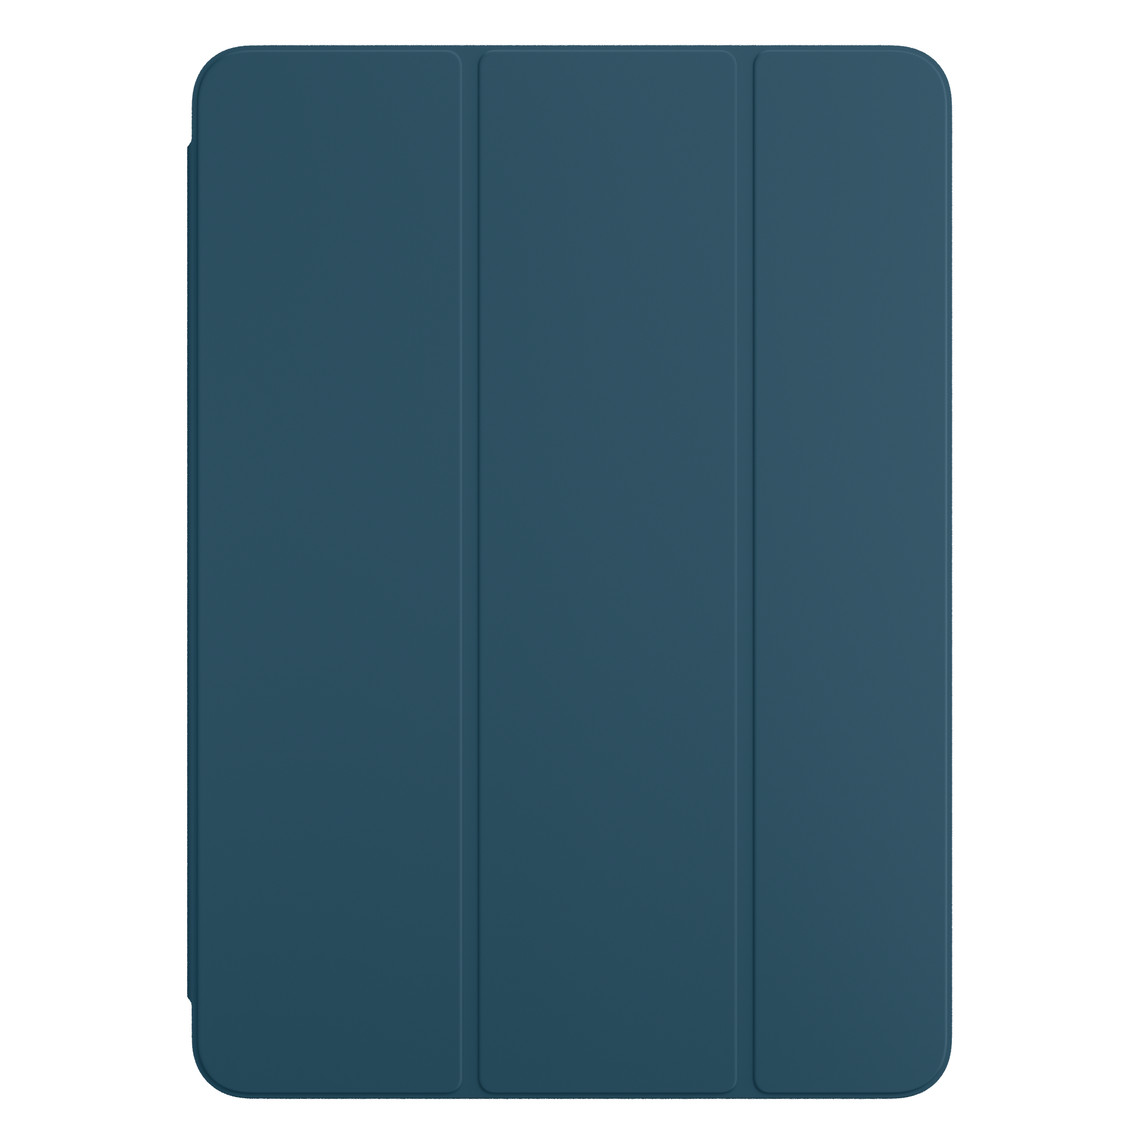 适用于 iPad Pro 的海蓝色智能双面夹的正面视图。